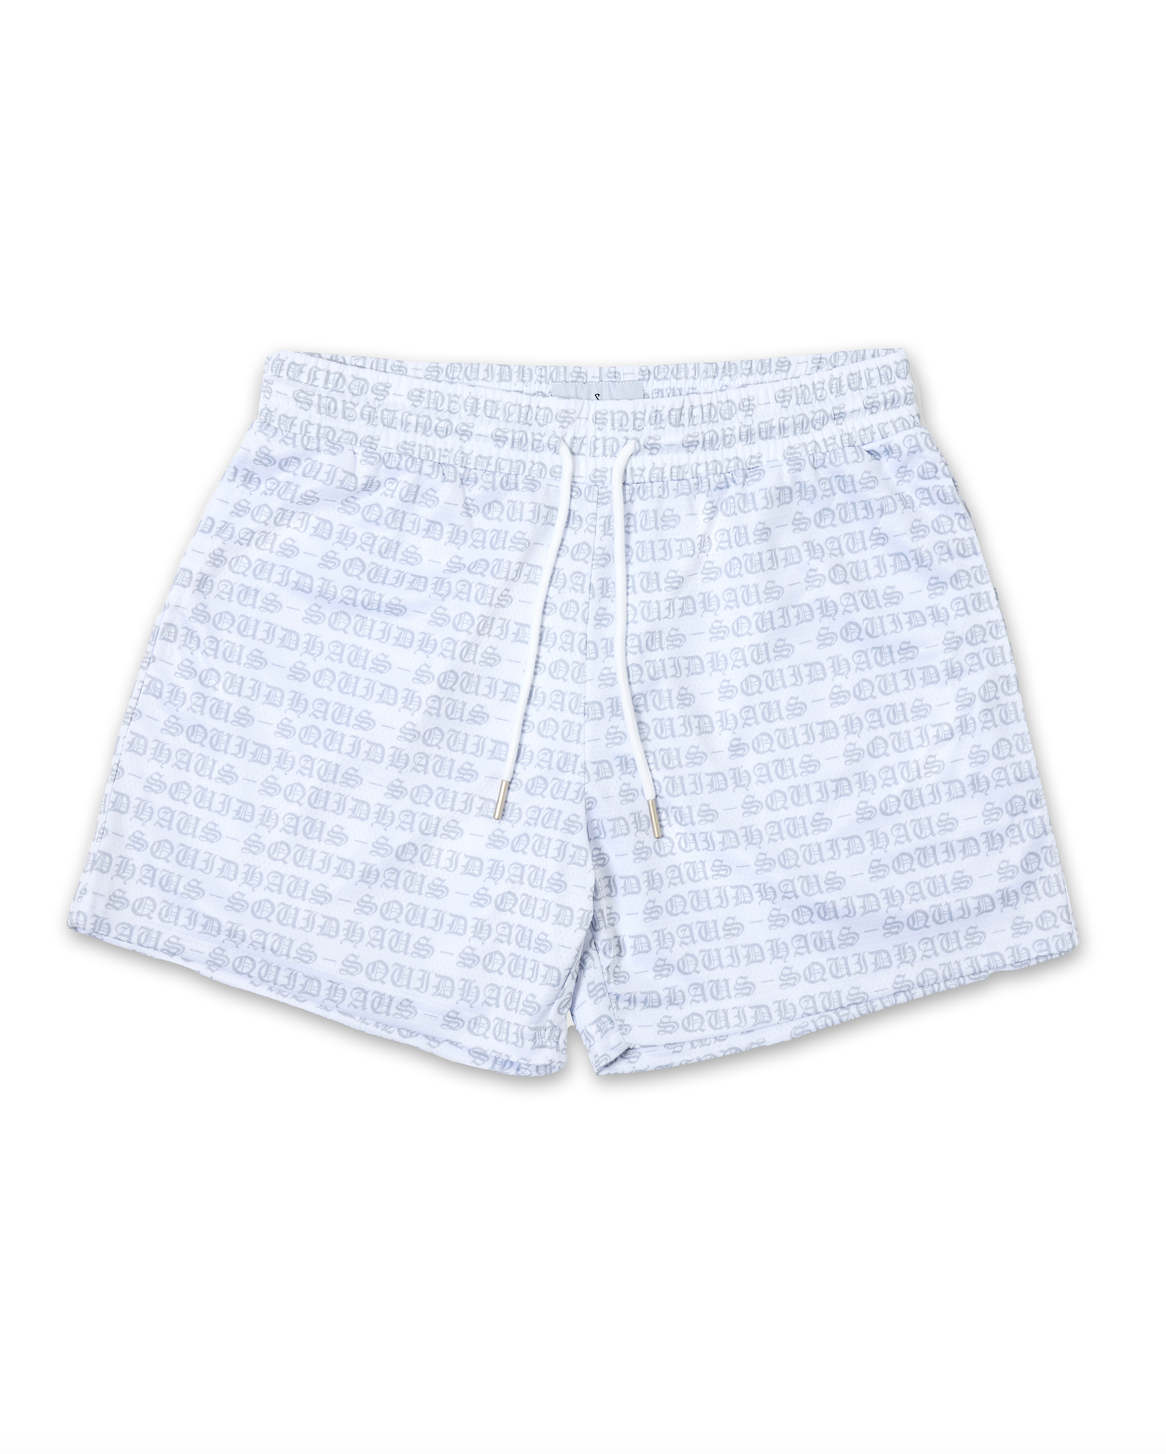 Mesh Shorts 4" Inseam - White